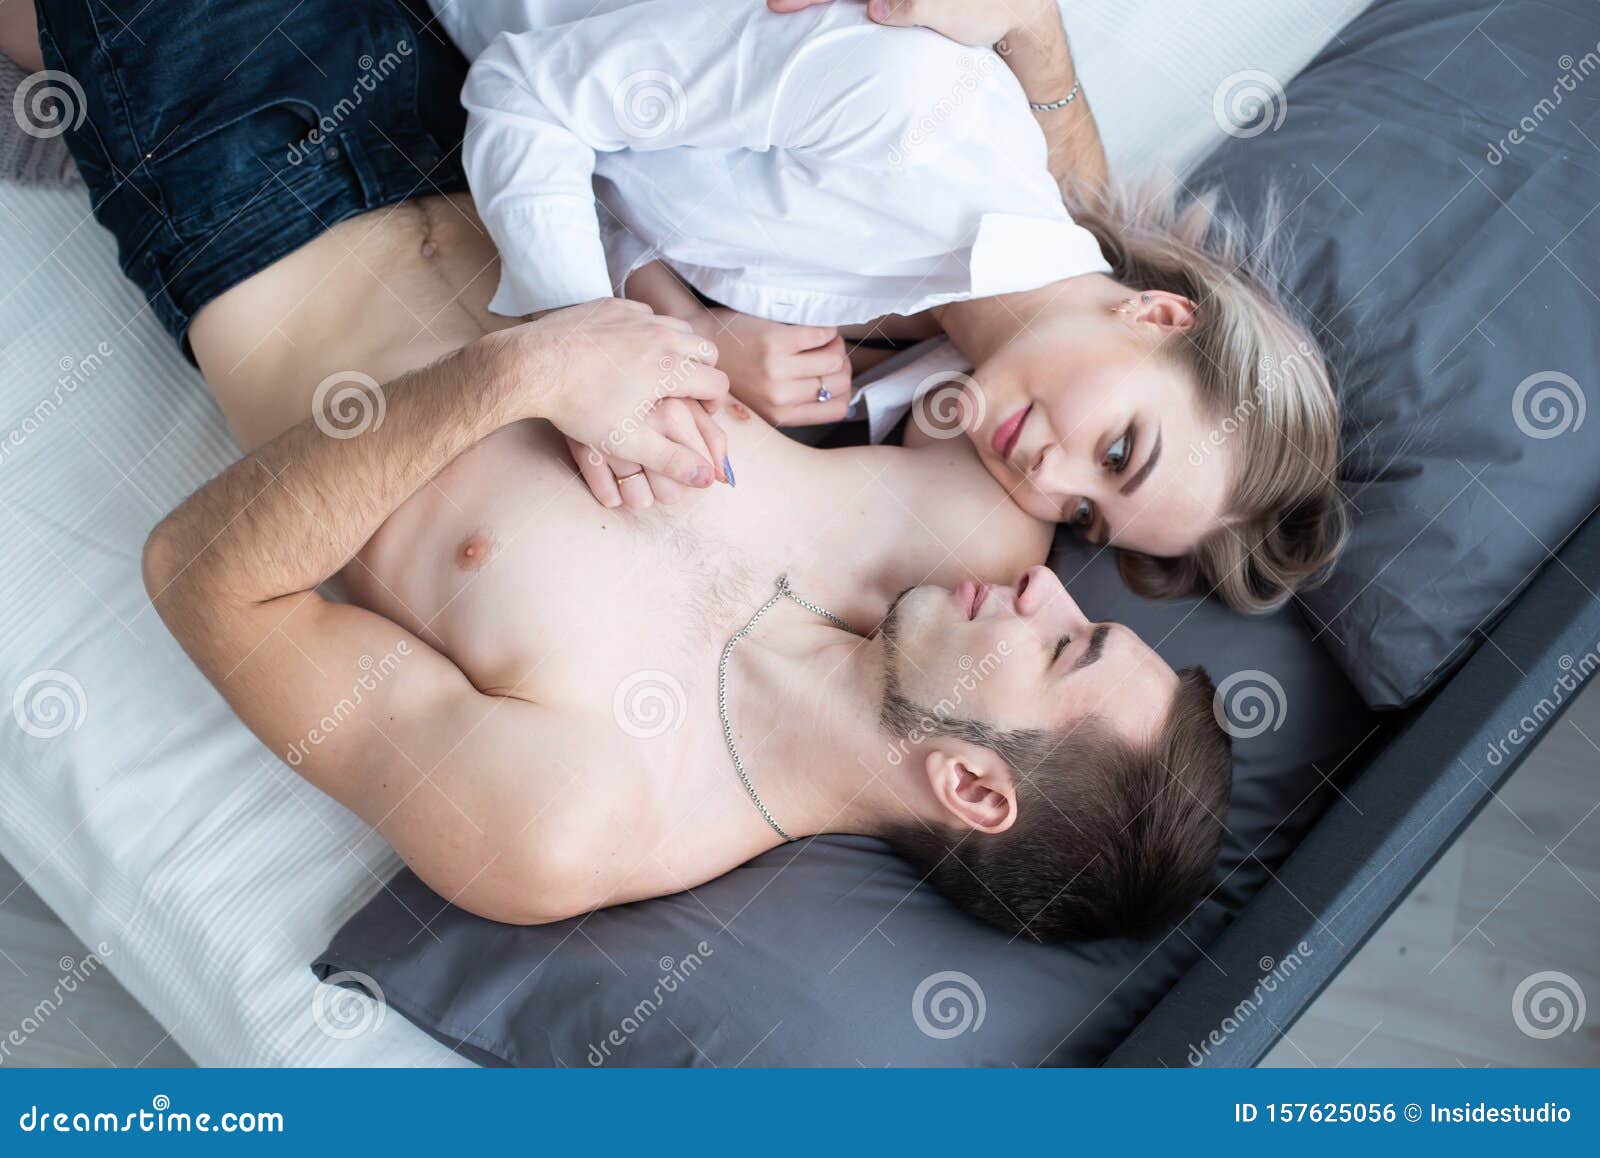 Парень и девушка в кровати голые фото